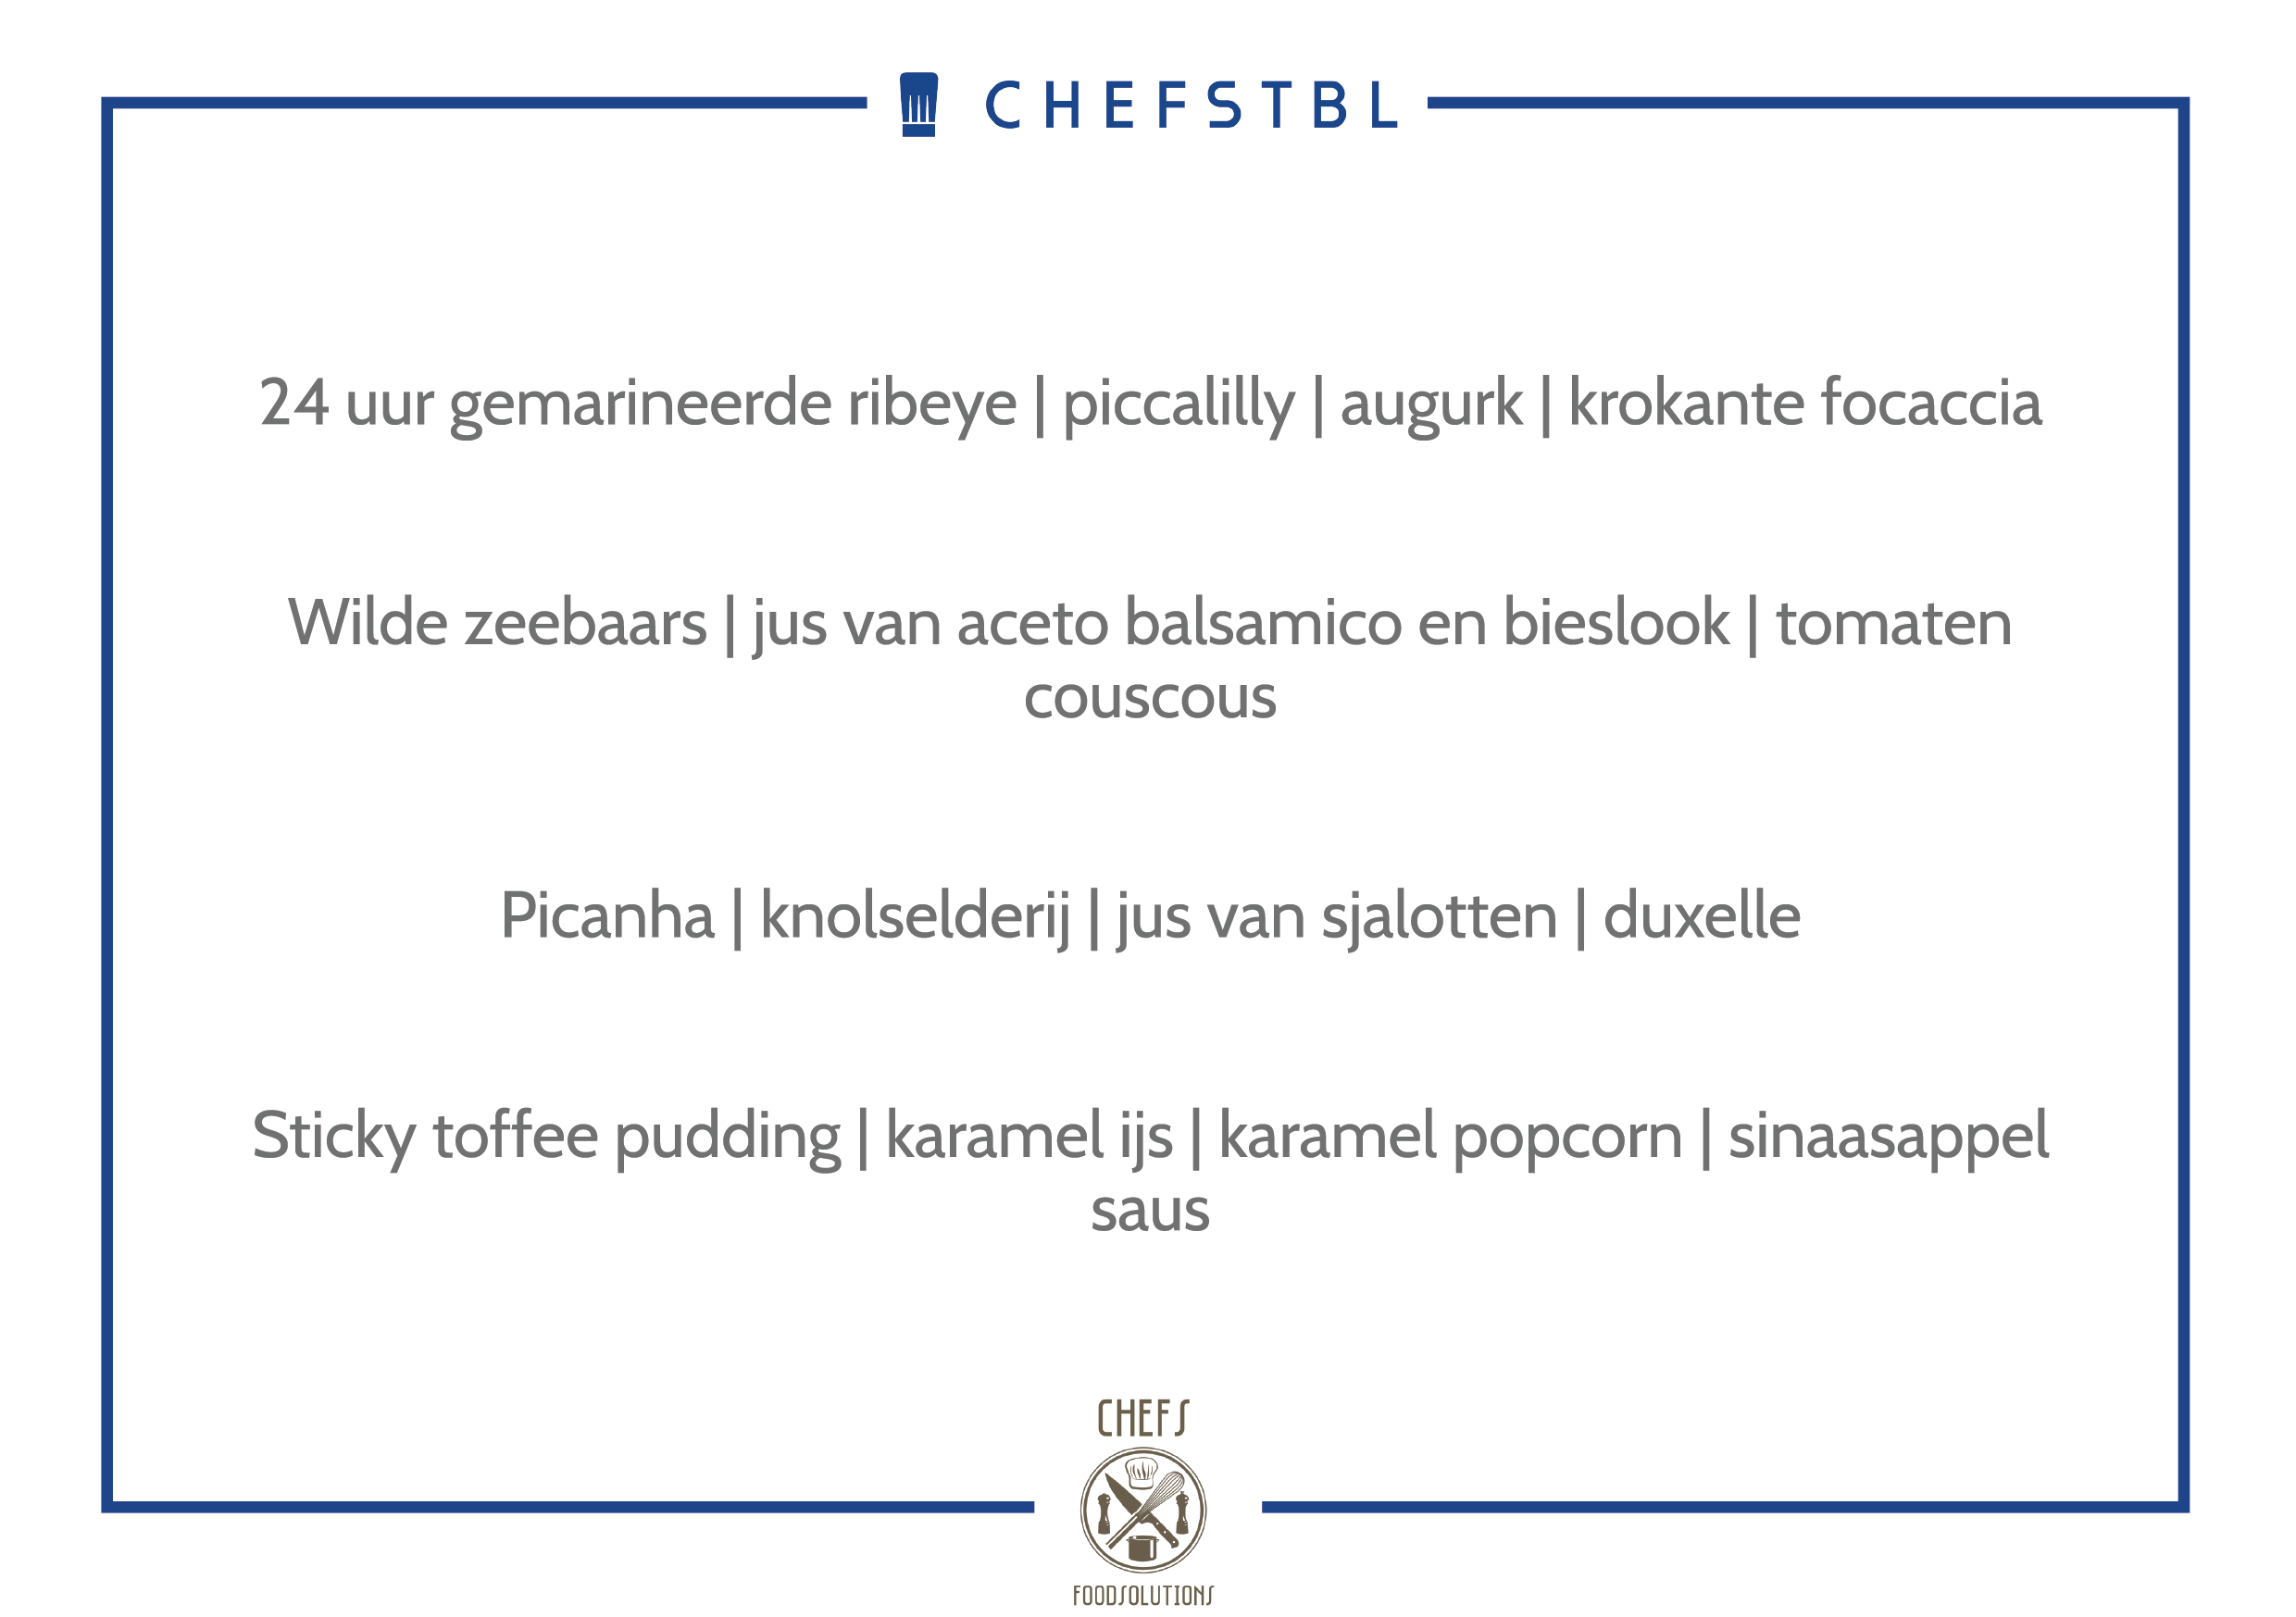 Voorbeeldmenu CHEFSTBL Chefs Foodsolutions